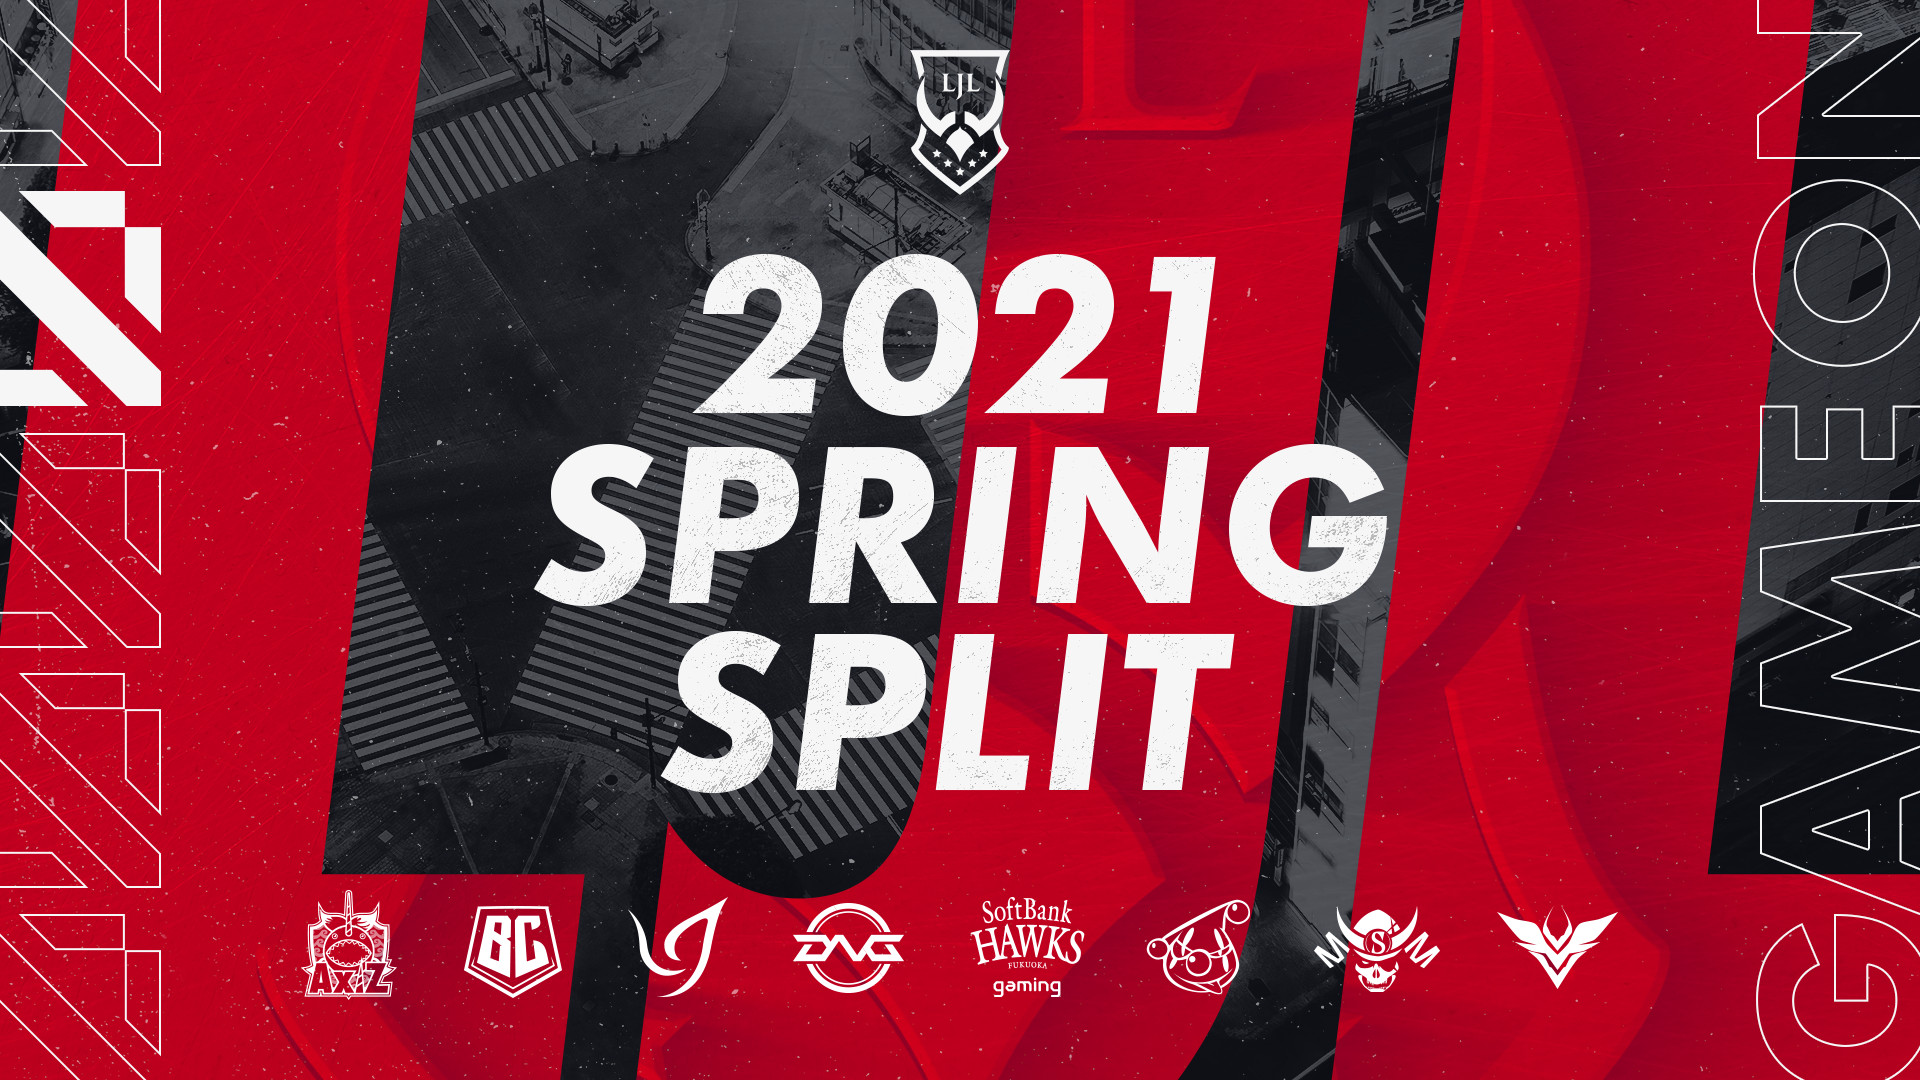 【大会情報】LJL 2021 Spring Split WEEK 5